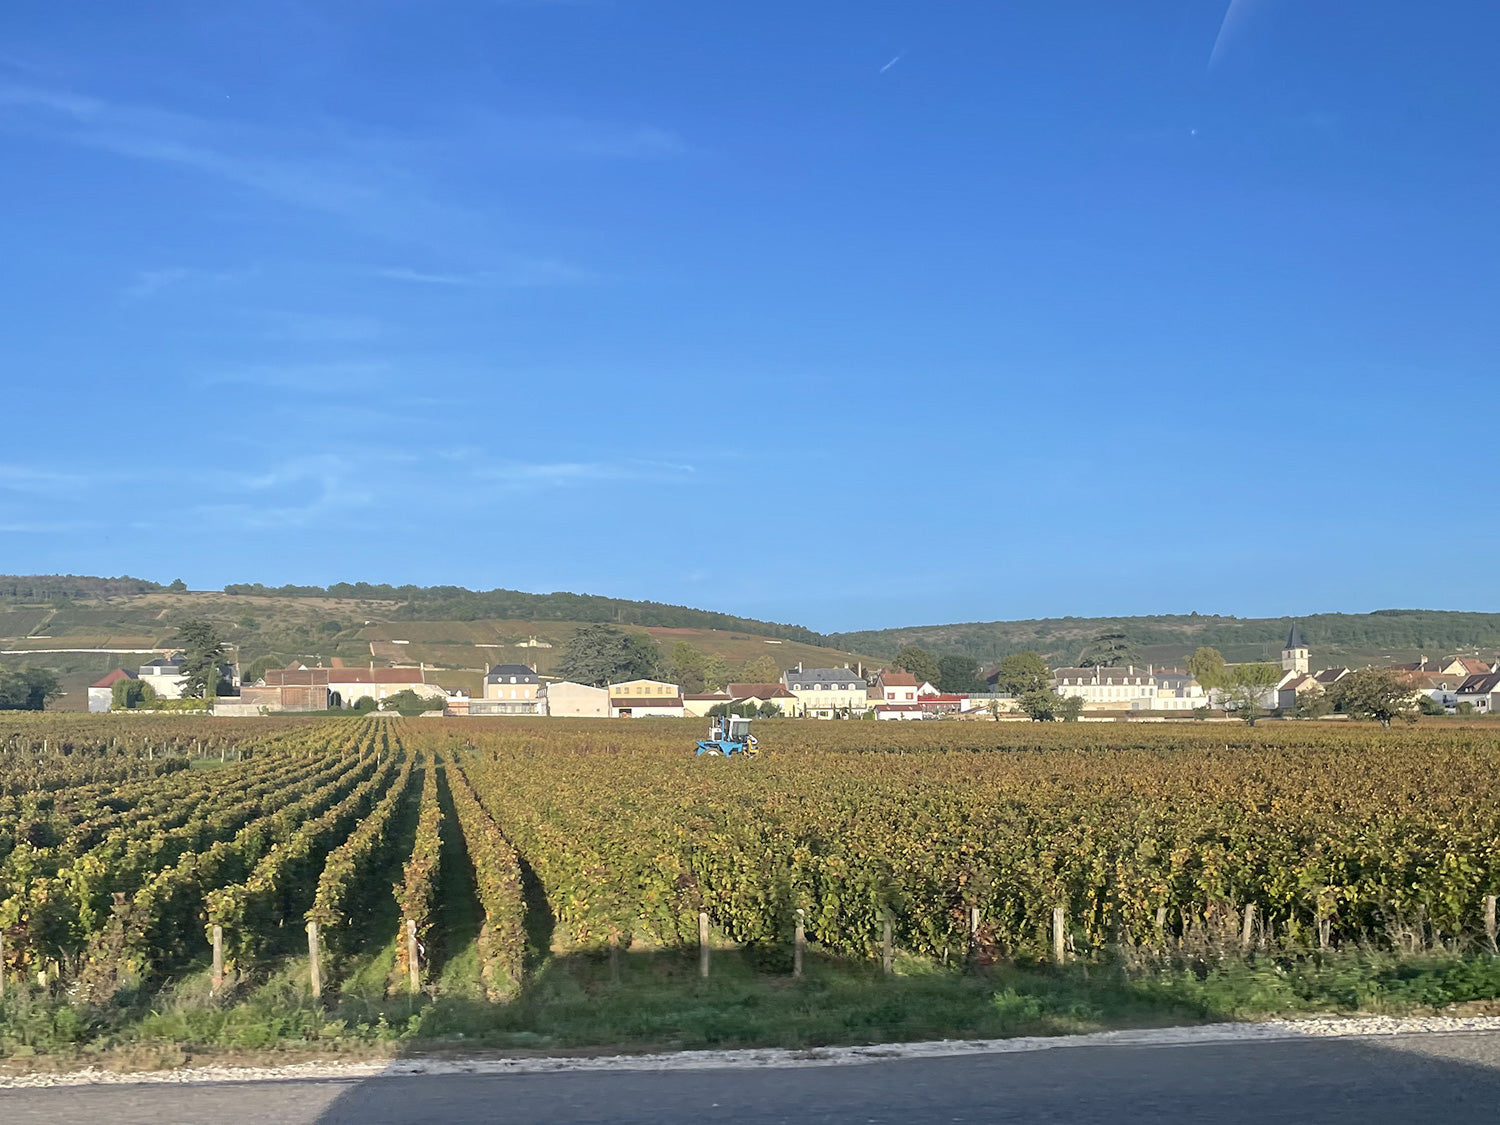 車窓から見たコード・ド・ニュイの畑。小高い丘一面にブドウ畑が並ぶ様子は息を呑む美しさ。